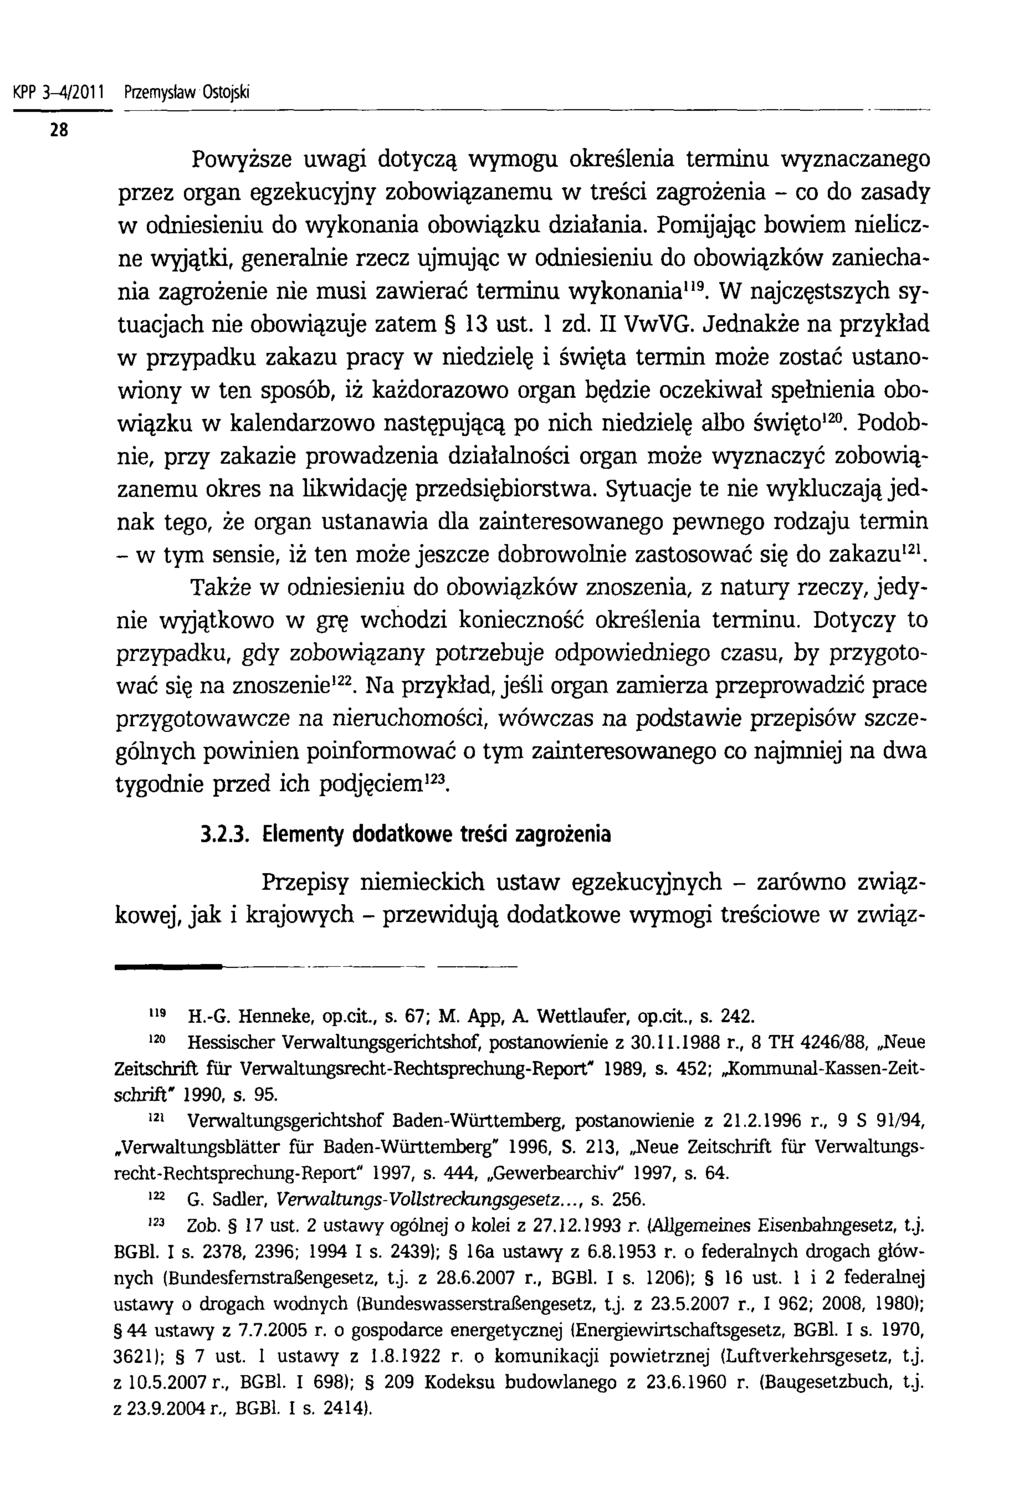 KPP 3-4/2011 Przemysław Ostojski Powyższe uwagi dotyczą wymogu określenia terminu wyznaczanego przez organ egzekucyjny zobowiązanemu w treści zagrożenia - co do zasady w odniesieniu do wykonania